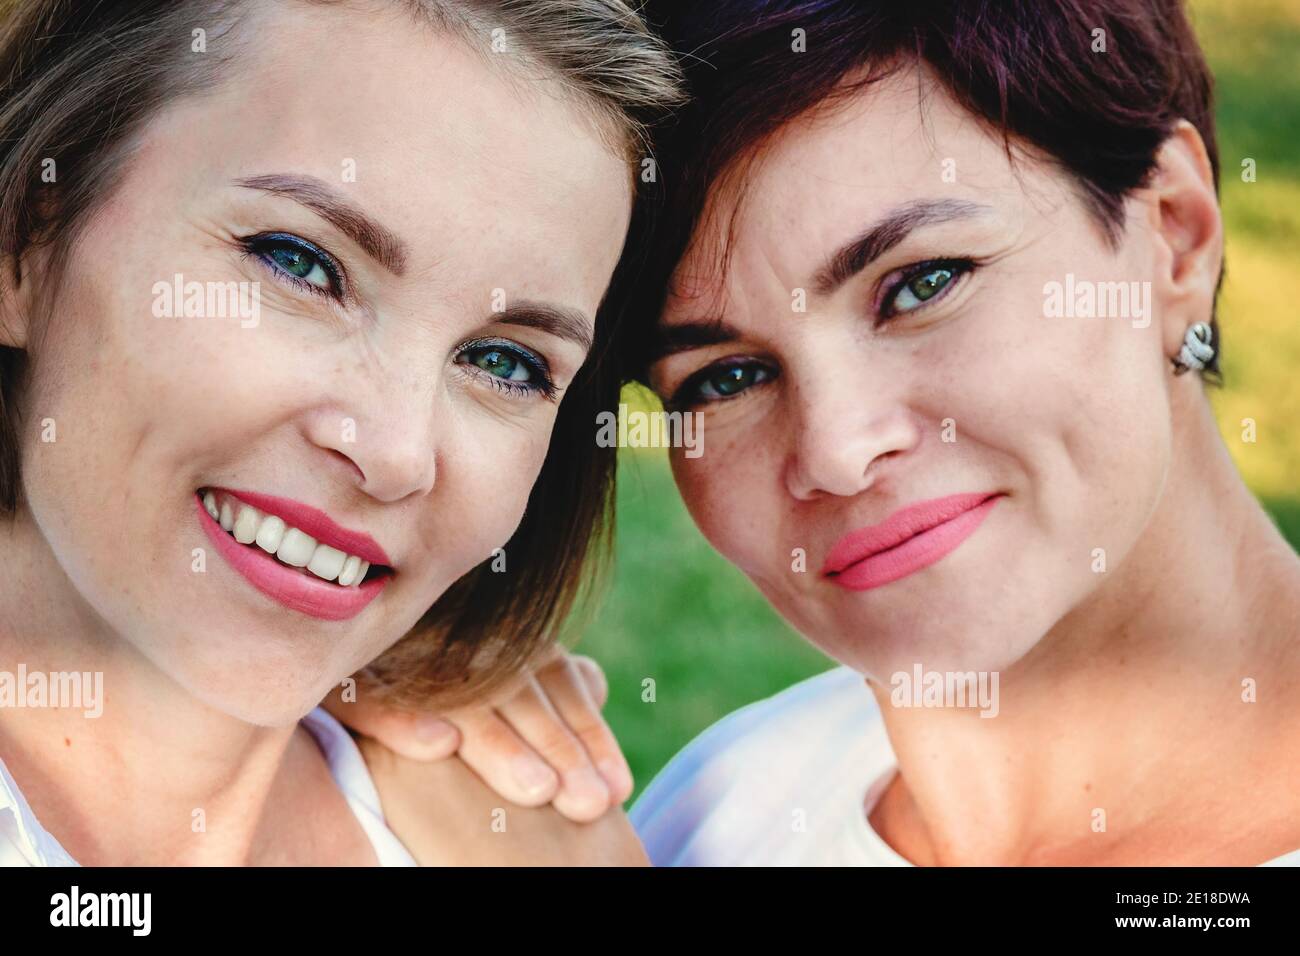 La amistad de las mujeres. Dos hermosas mujeres de apariencia caucásica están sonriendo. Primer plano vertical. Foto de stock